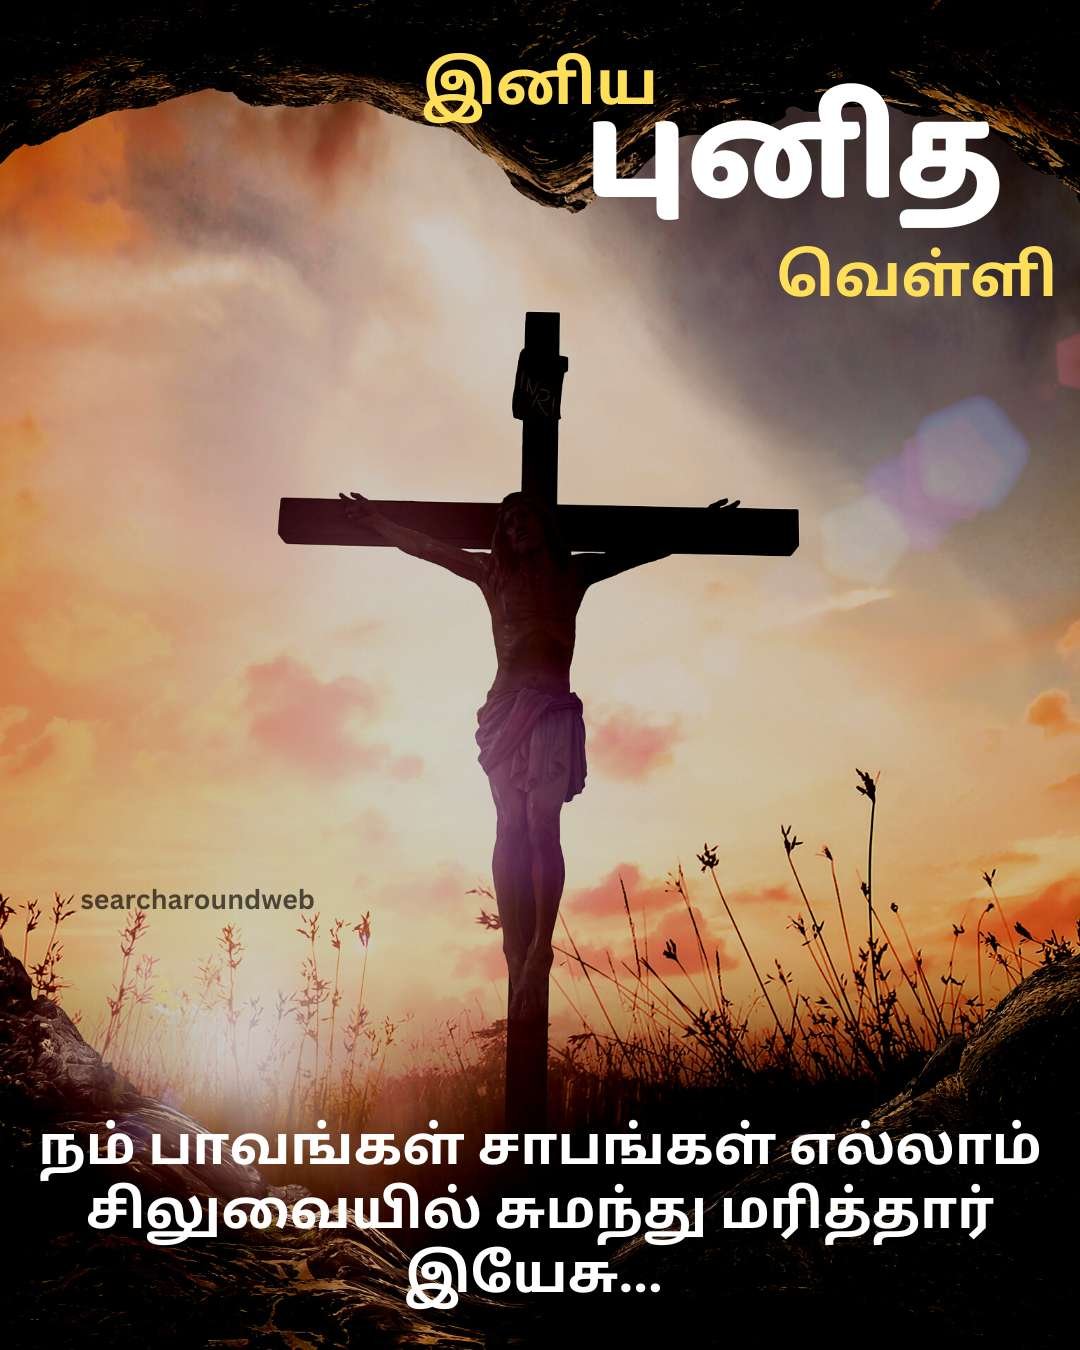 இனிய புனித வெள்ளி வாழ்த்துக்கள் 2023 | Good Friday 2023 Wishes in Tamil